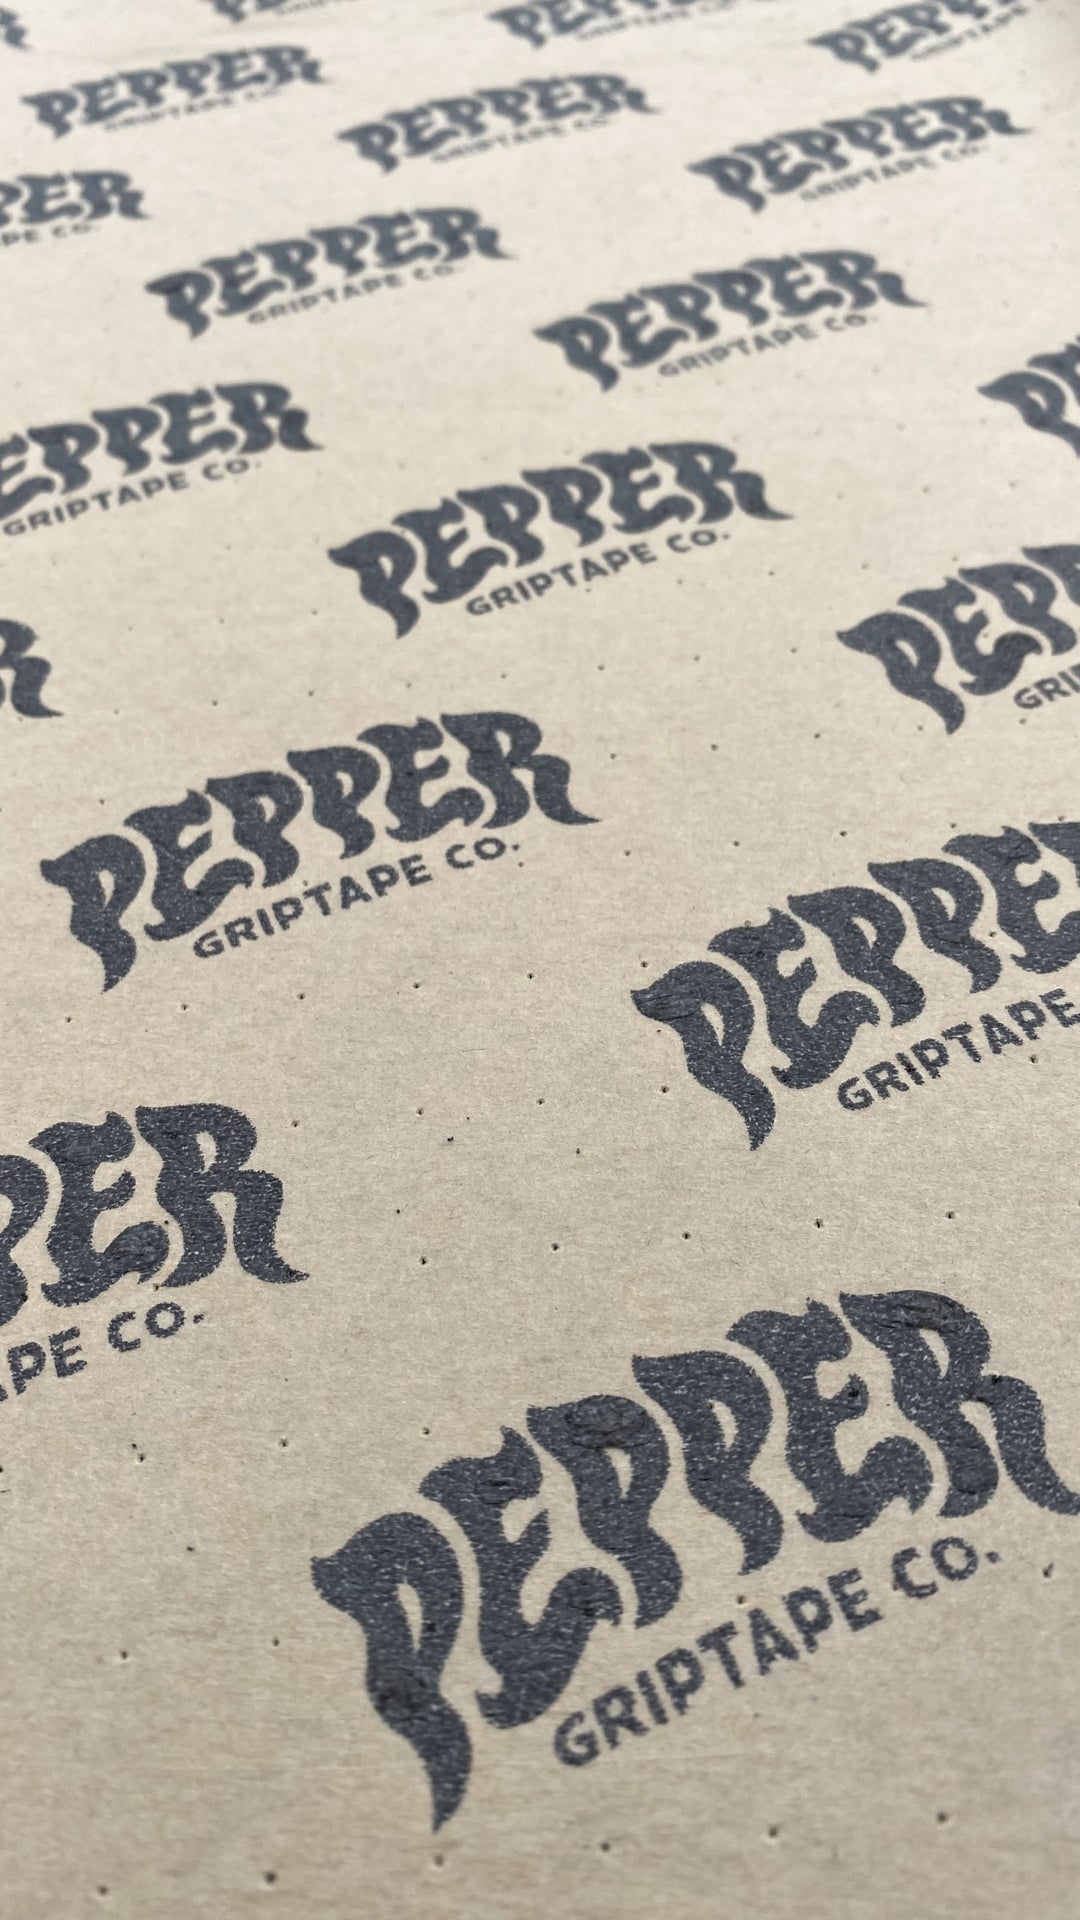 Pepper Griptape Co.